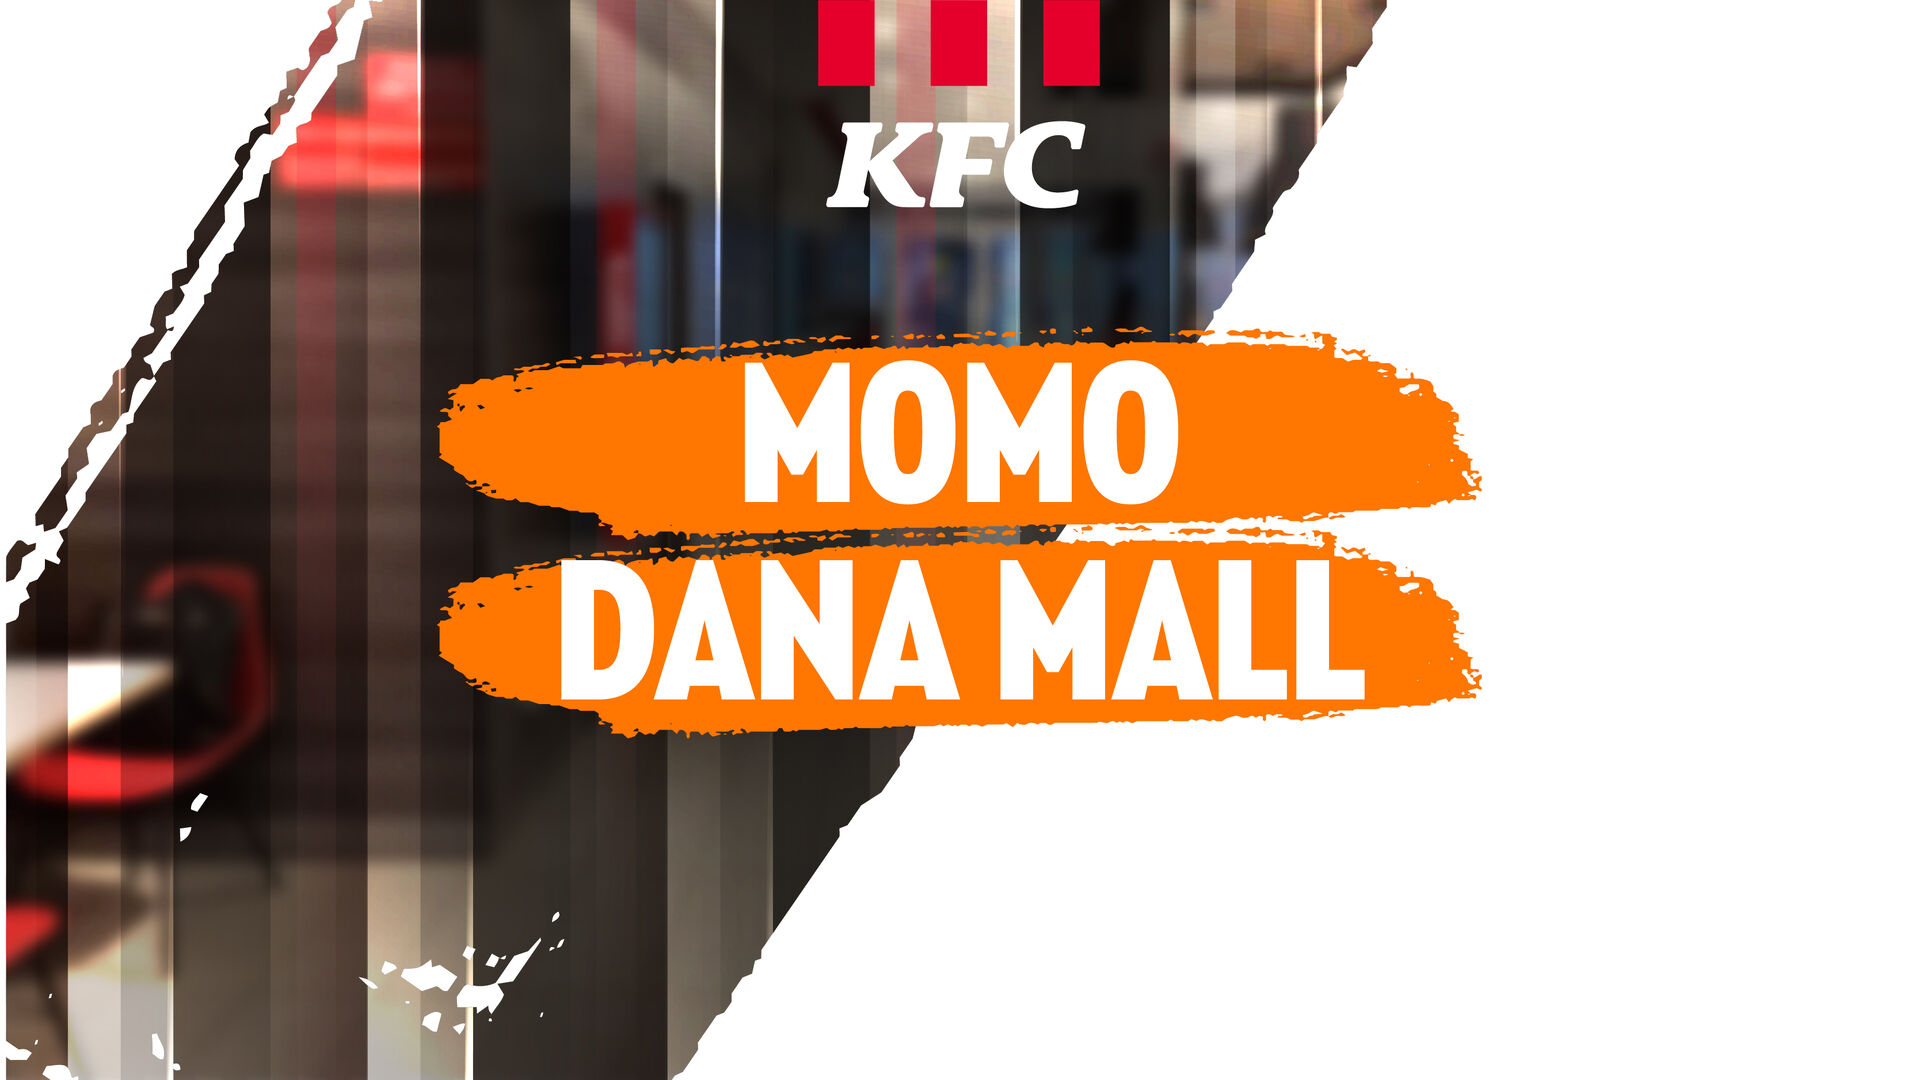 Изменения в режиме работы KFC в ТЦ Момо и ТРЦ Dana Mall